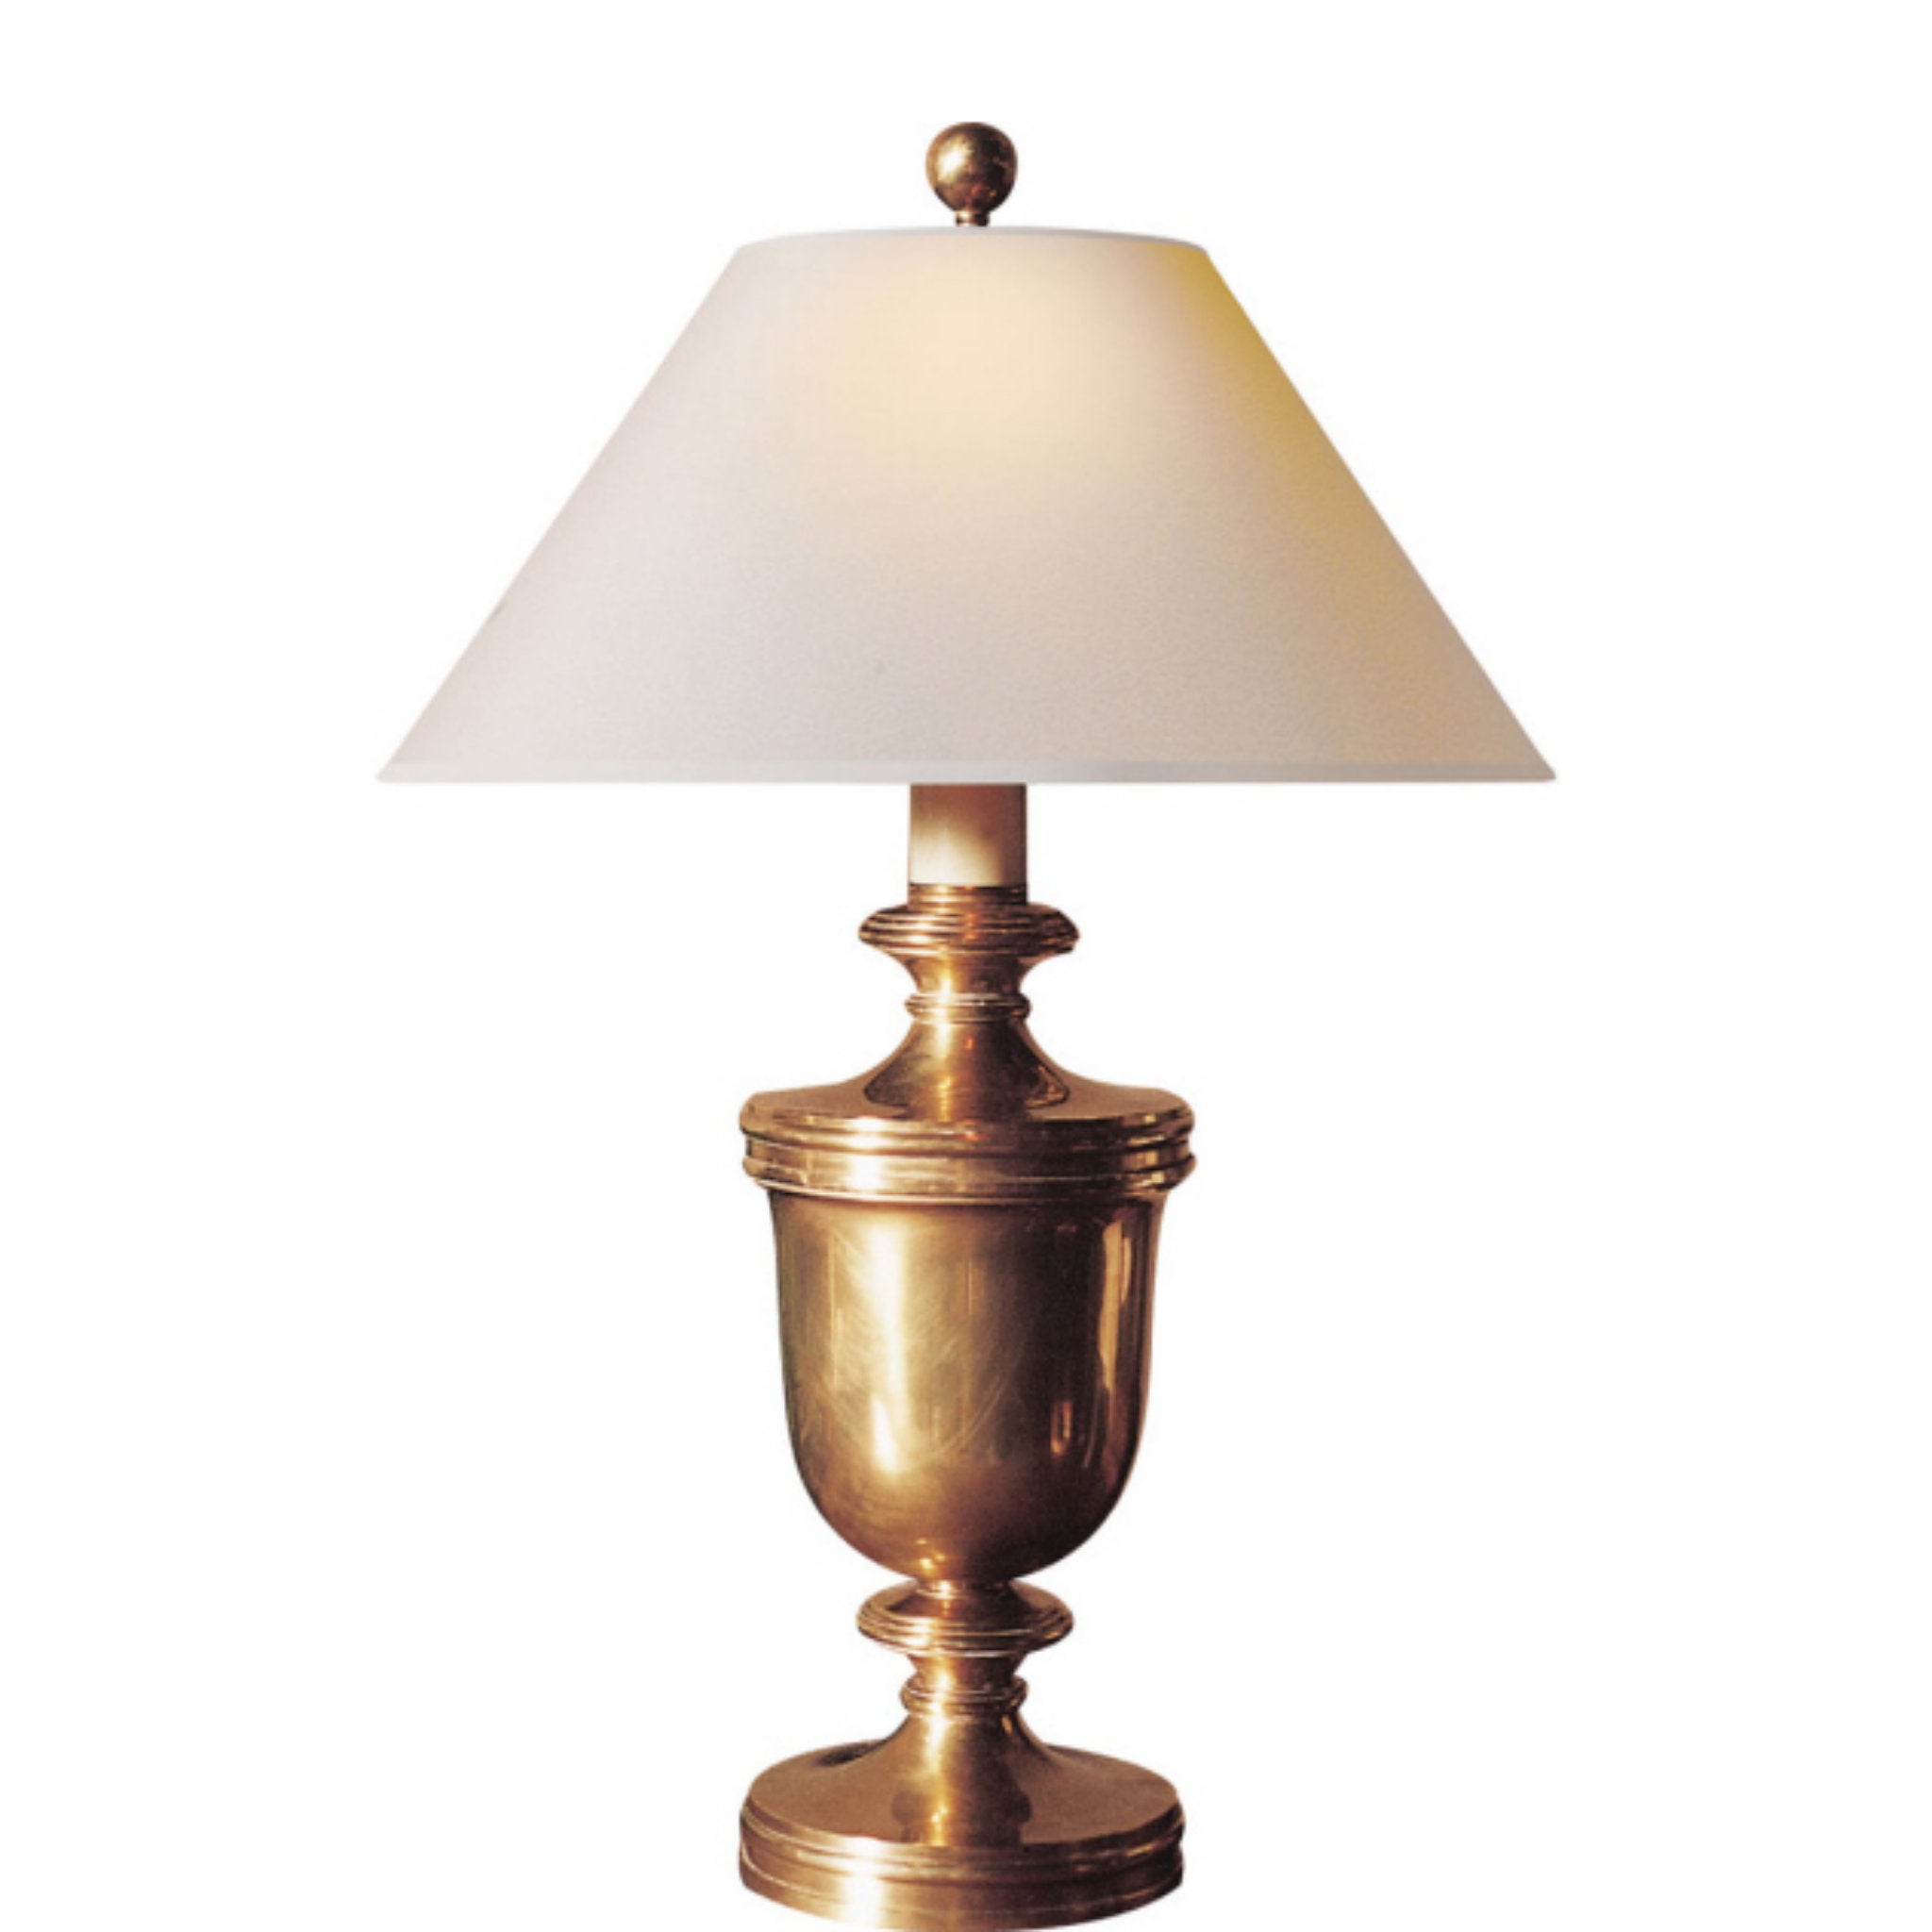 Malvasia Brass Desk Lamp - Vintage Brass